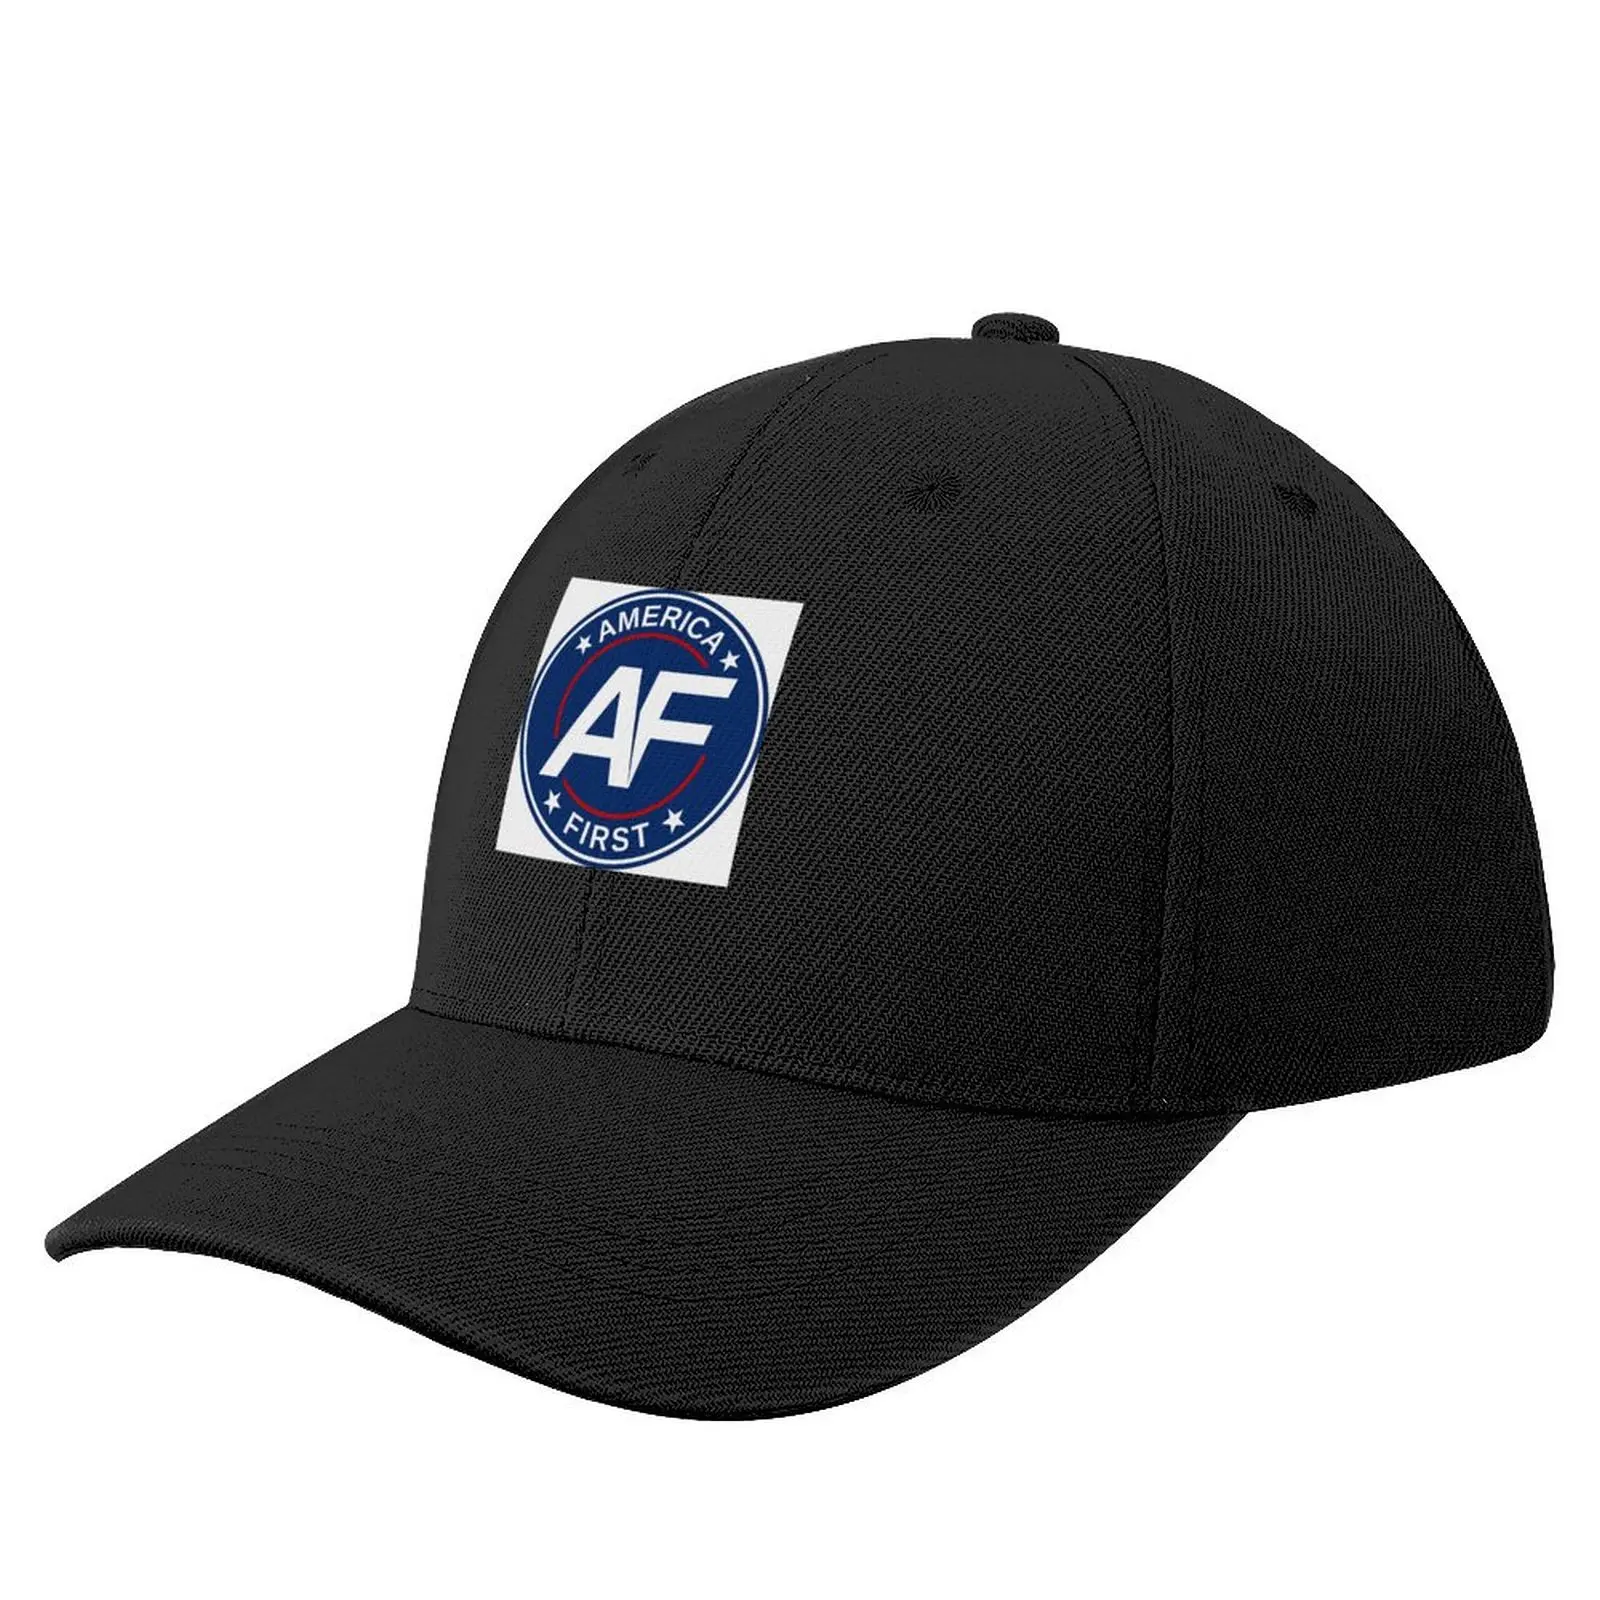 

America First Baseball Cap Wild Ball Hat Trucker Hat Snap Back Hat Hip Hop Man Women's